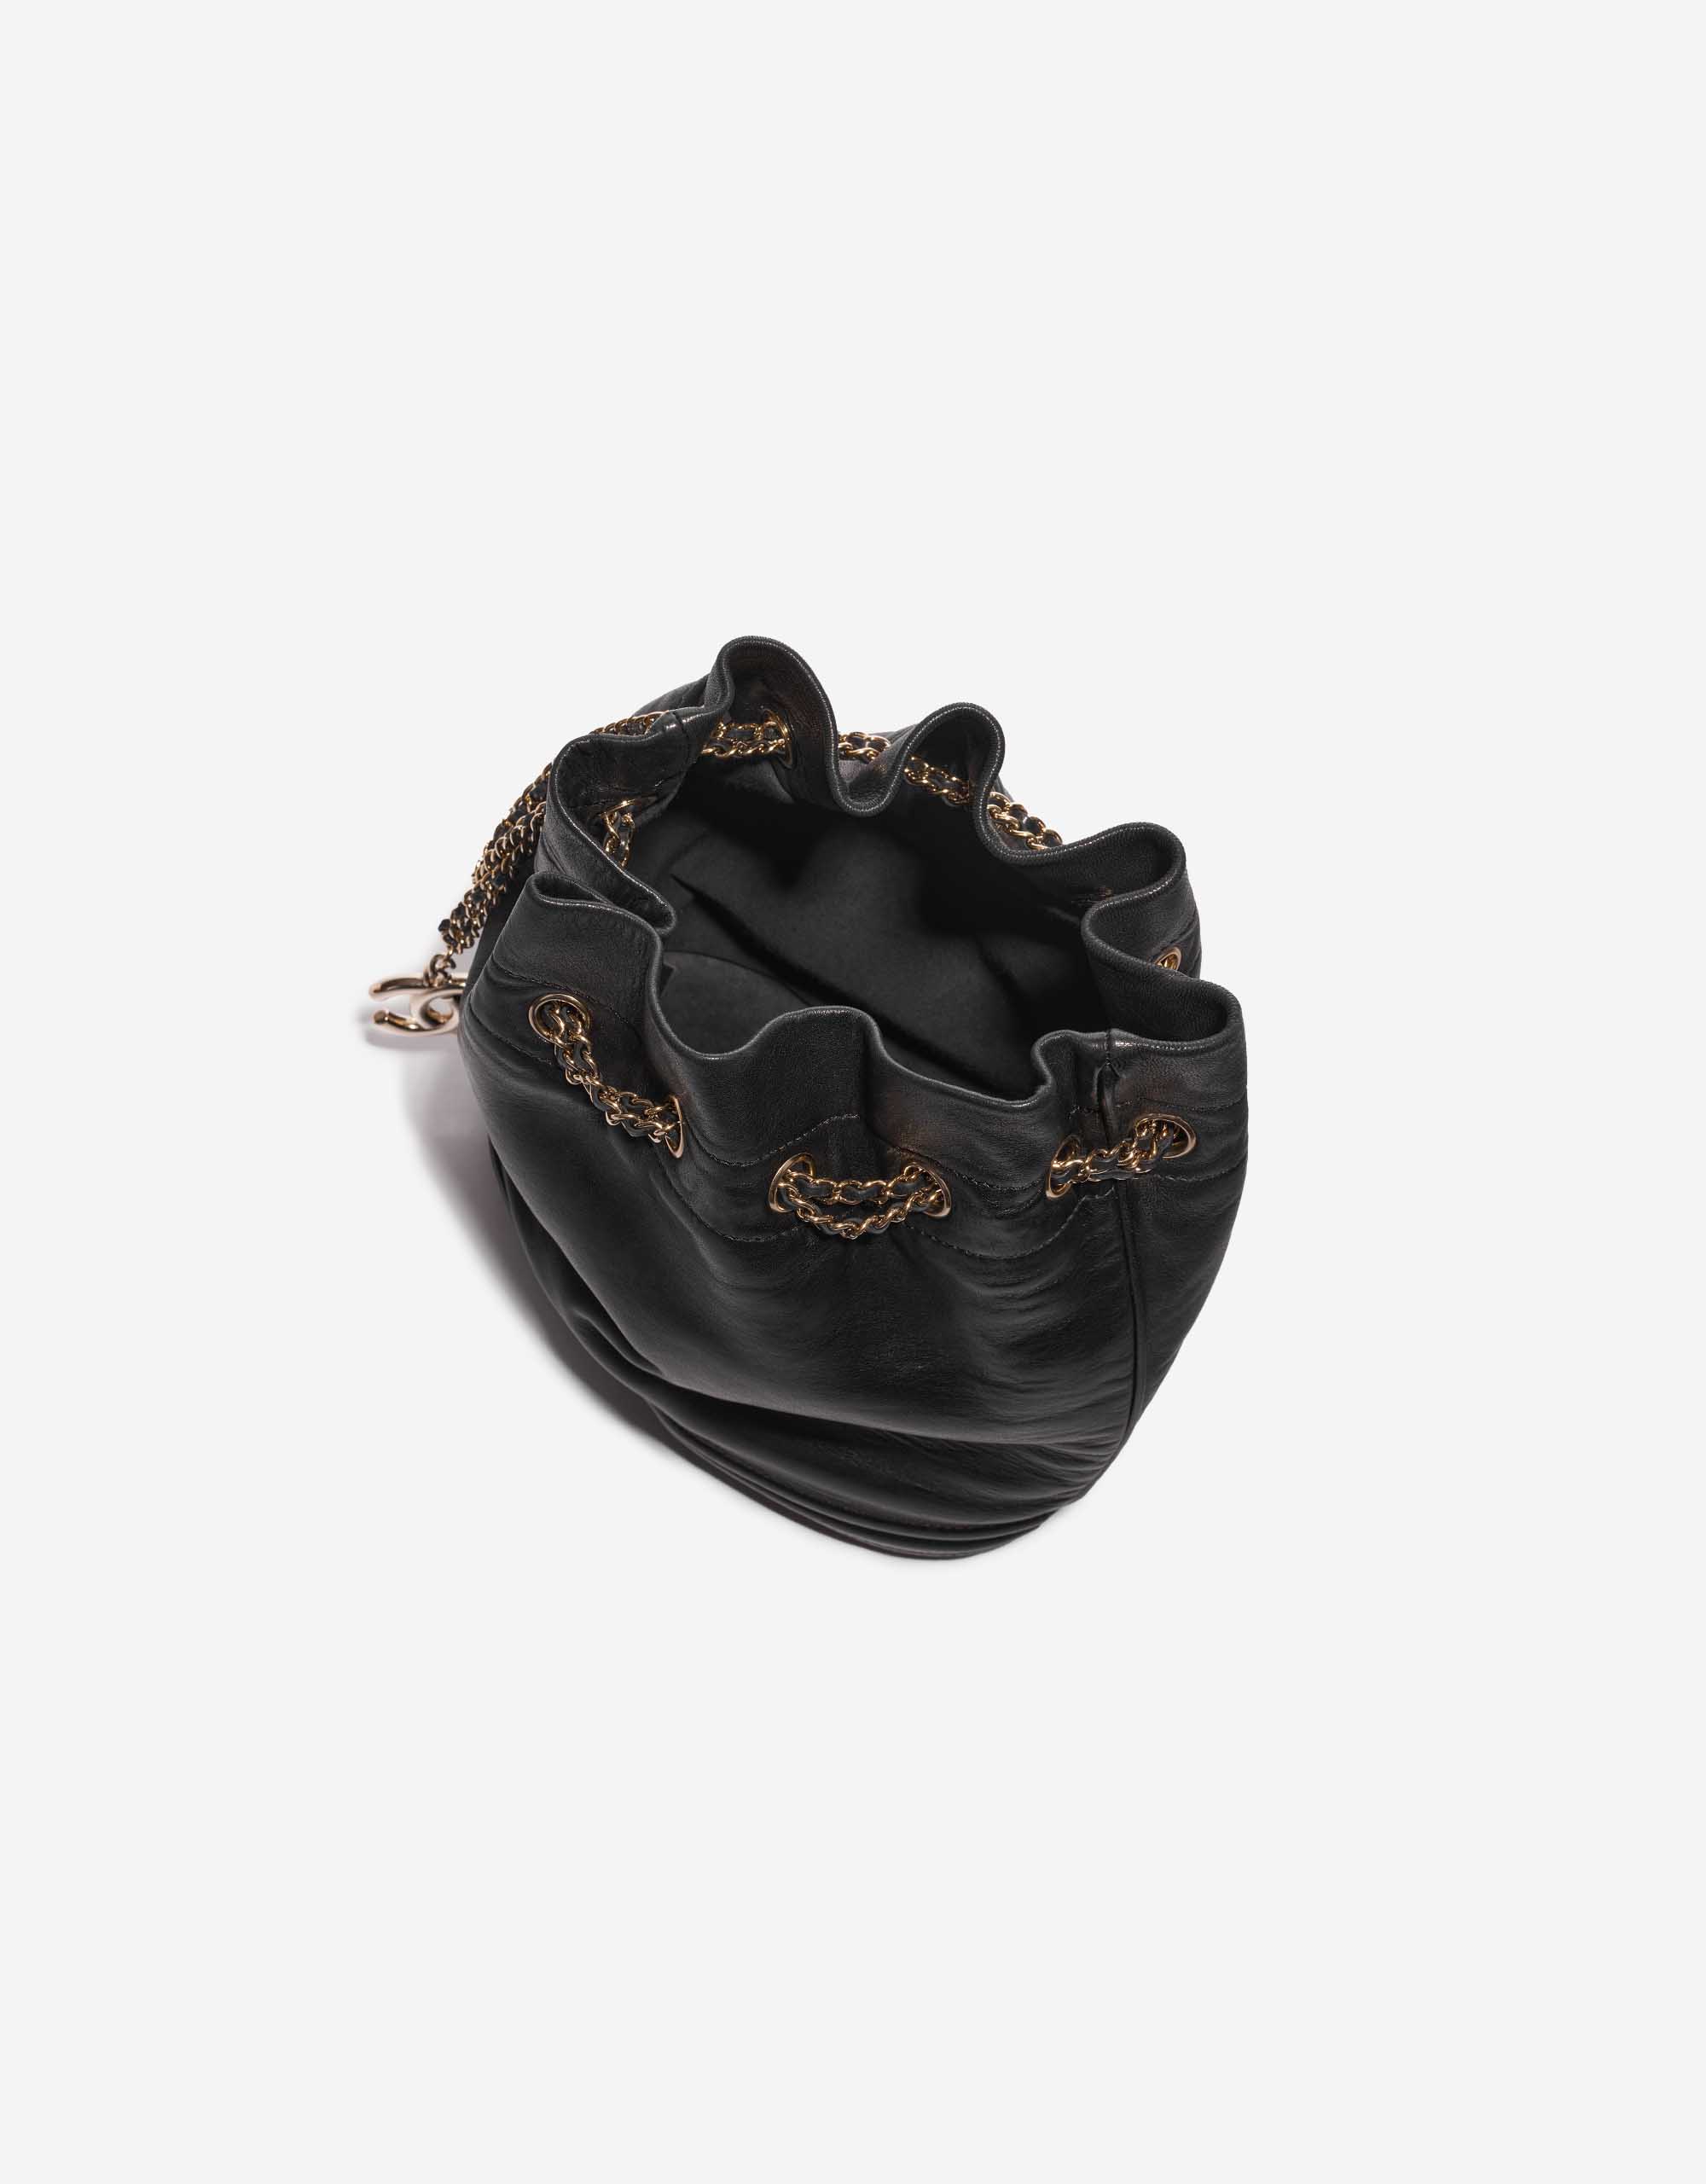 Sac Chanel d'occasion Cordon Bucket Agneau Noir Noir Intérieur | Vendez votre sac de créateur sur Saclab.com